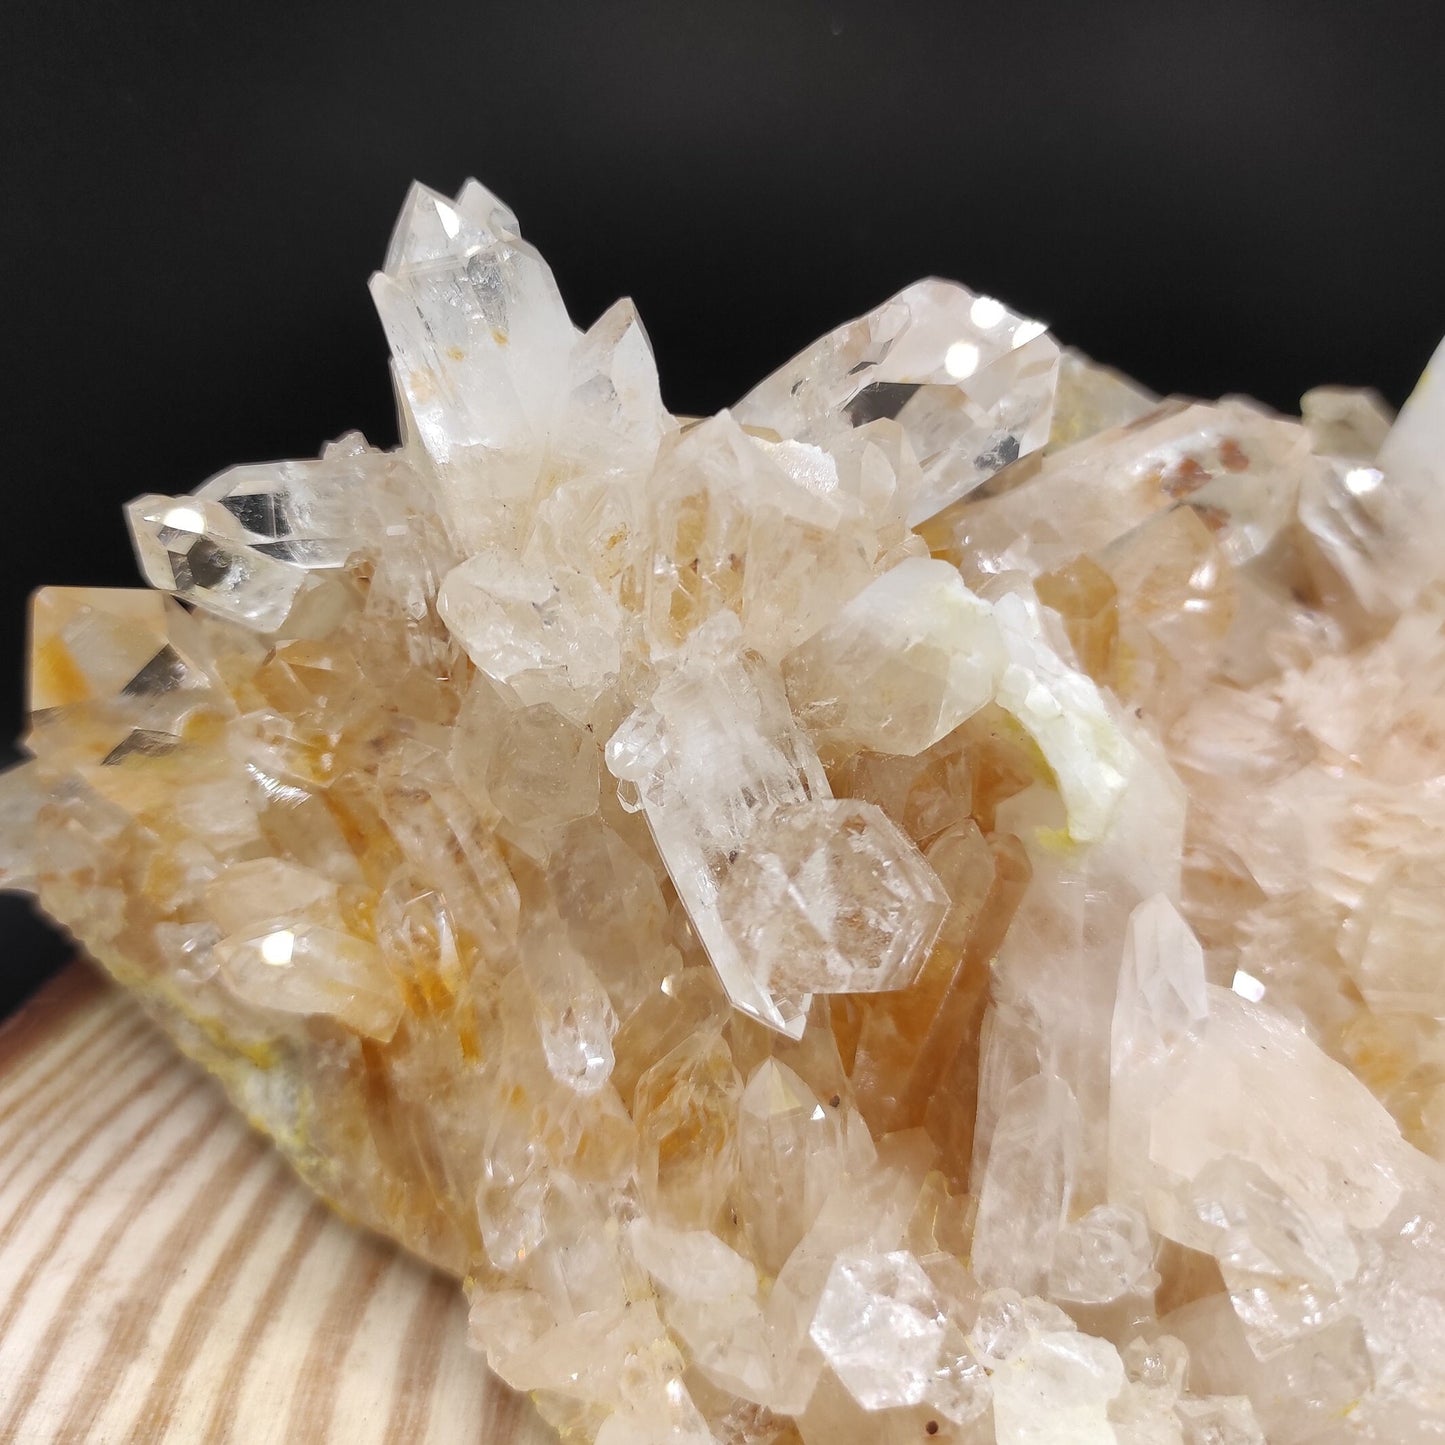 1.50kg XL Clear Quartz Specimen - Clear Quartz Statement Pieces from Belleza, Colombia - Large Quartz Crystal Clusters - Raw Quartz